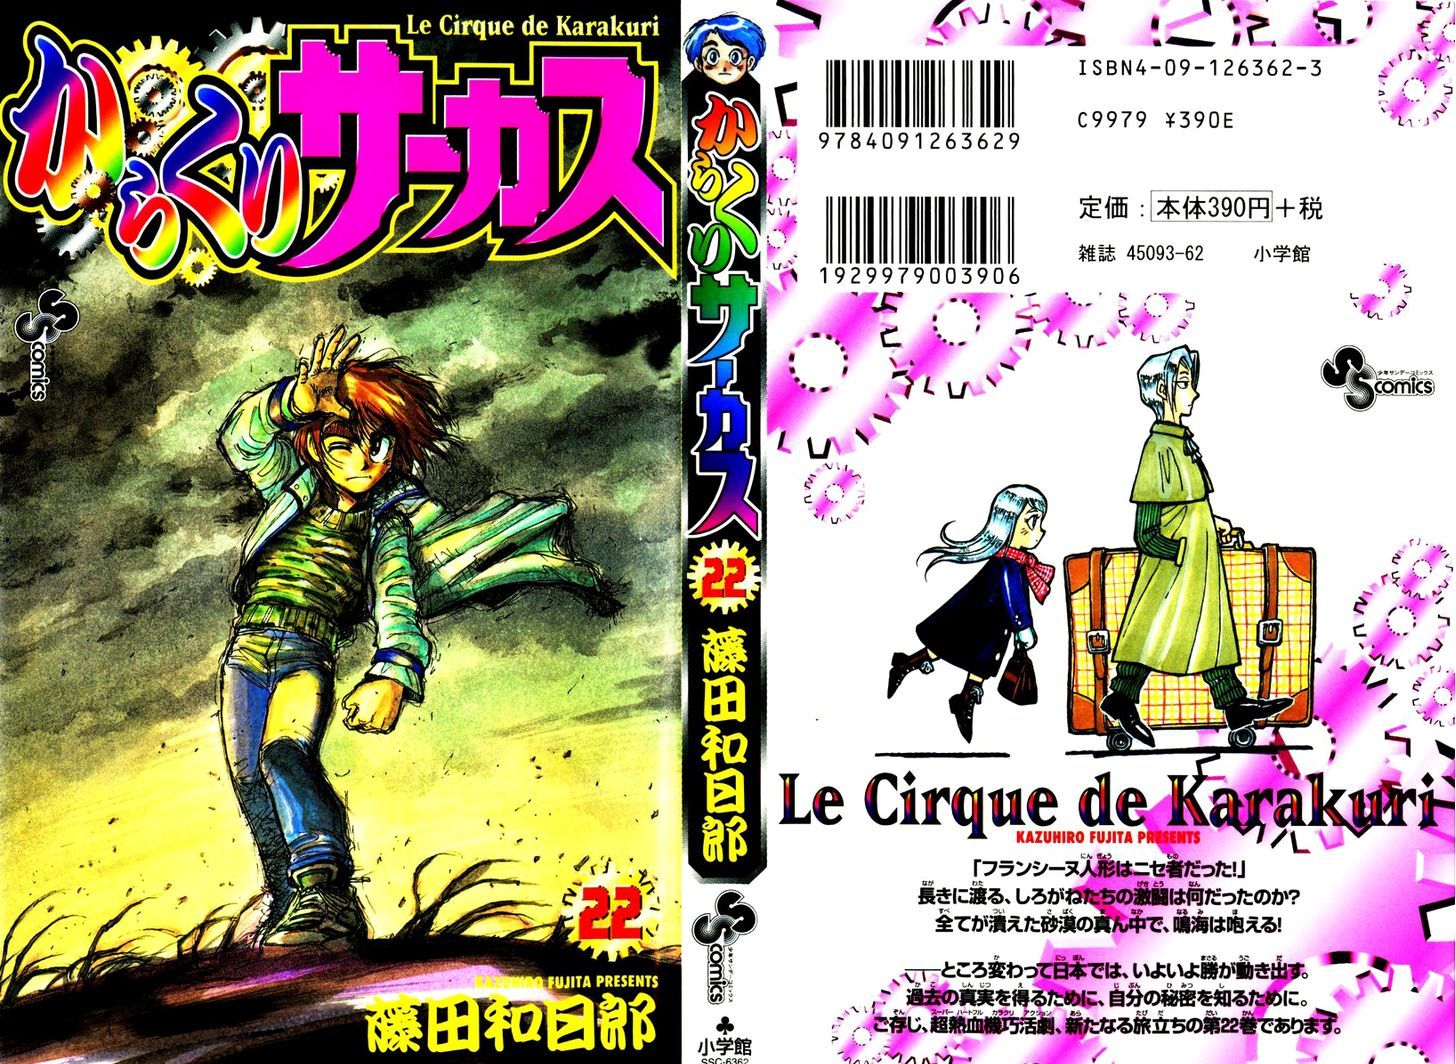 Karakuri Circus Chapter 207 : Karakuriã€Œfinal Actâ€”Act 51: The Last One - Picture 1